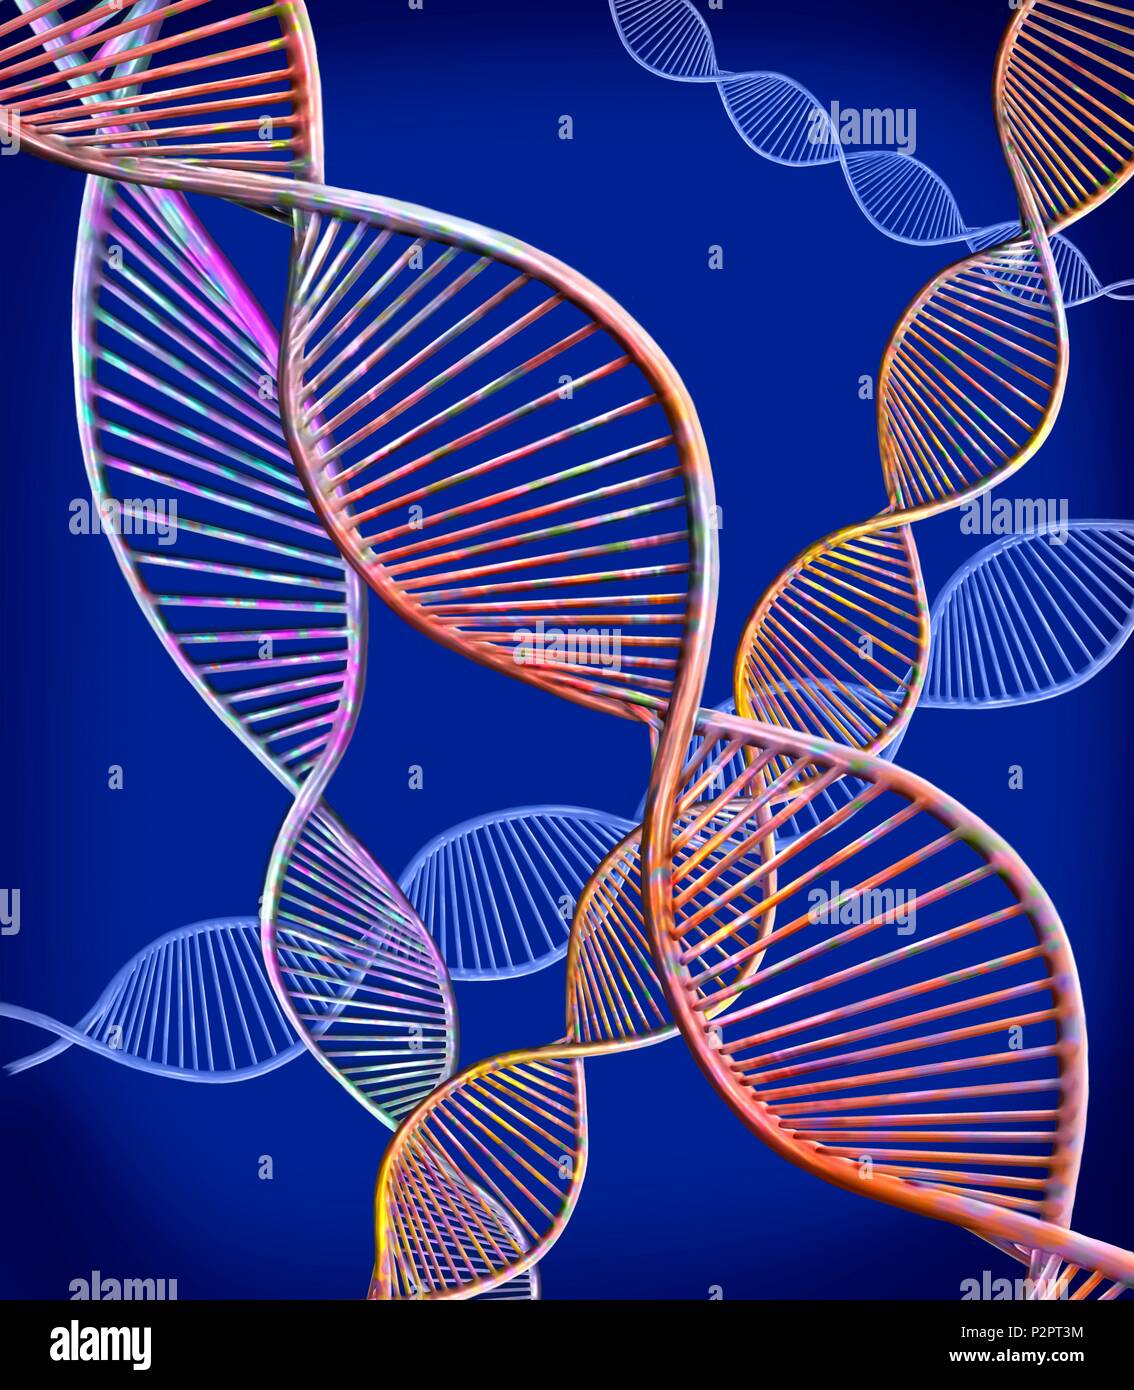 Filamenti di DNA. Computer illustrazione che mostra la struttura di un doppio filamento di DNA (acido desossiribonucleico) molecole. Il DNA è composto da due trefoli intrecciati in una doppia elica. Ciascun trefolo è composto di zucchero-fosfato (curvi) attaccato alle basi nucleotidiche. Ci sono quattro basi: adenina, citosina, guanina e timina. Il DNA contiene sezioni chiamati geni che codificano il corpo di informazioni genetiche. Foto Stock